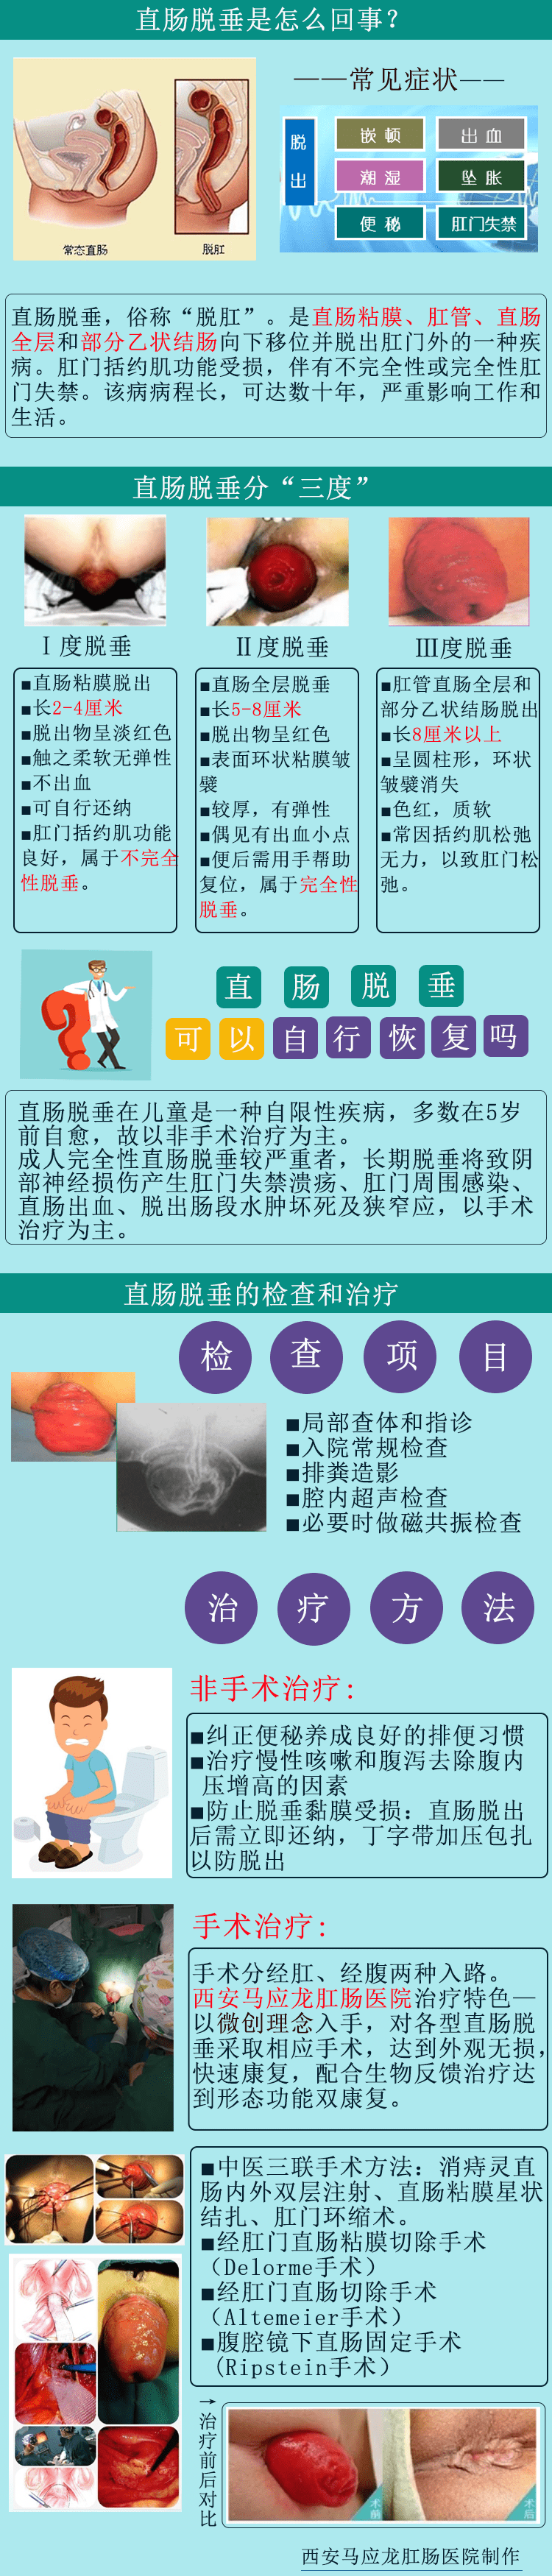 西安马应龙肛肠医院:直肠脱垂的手术治疗